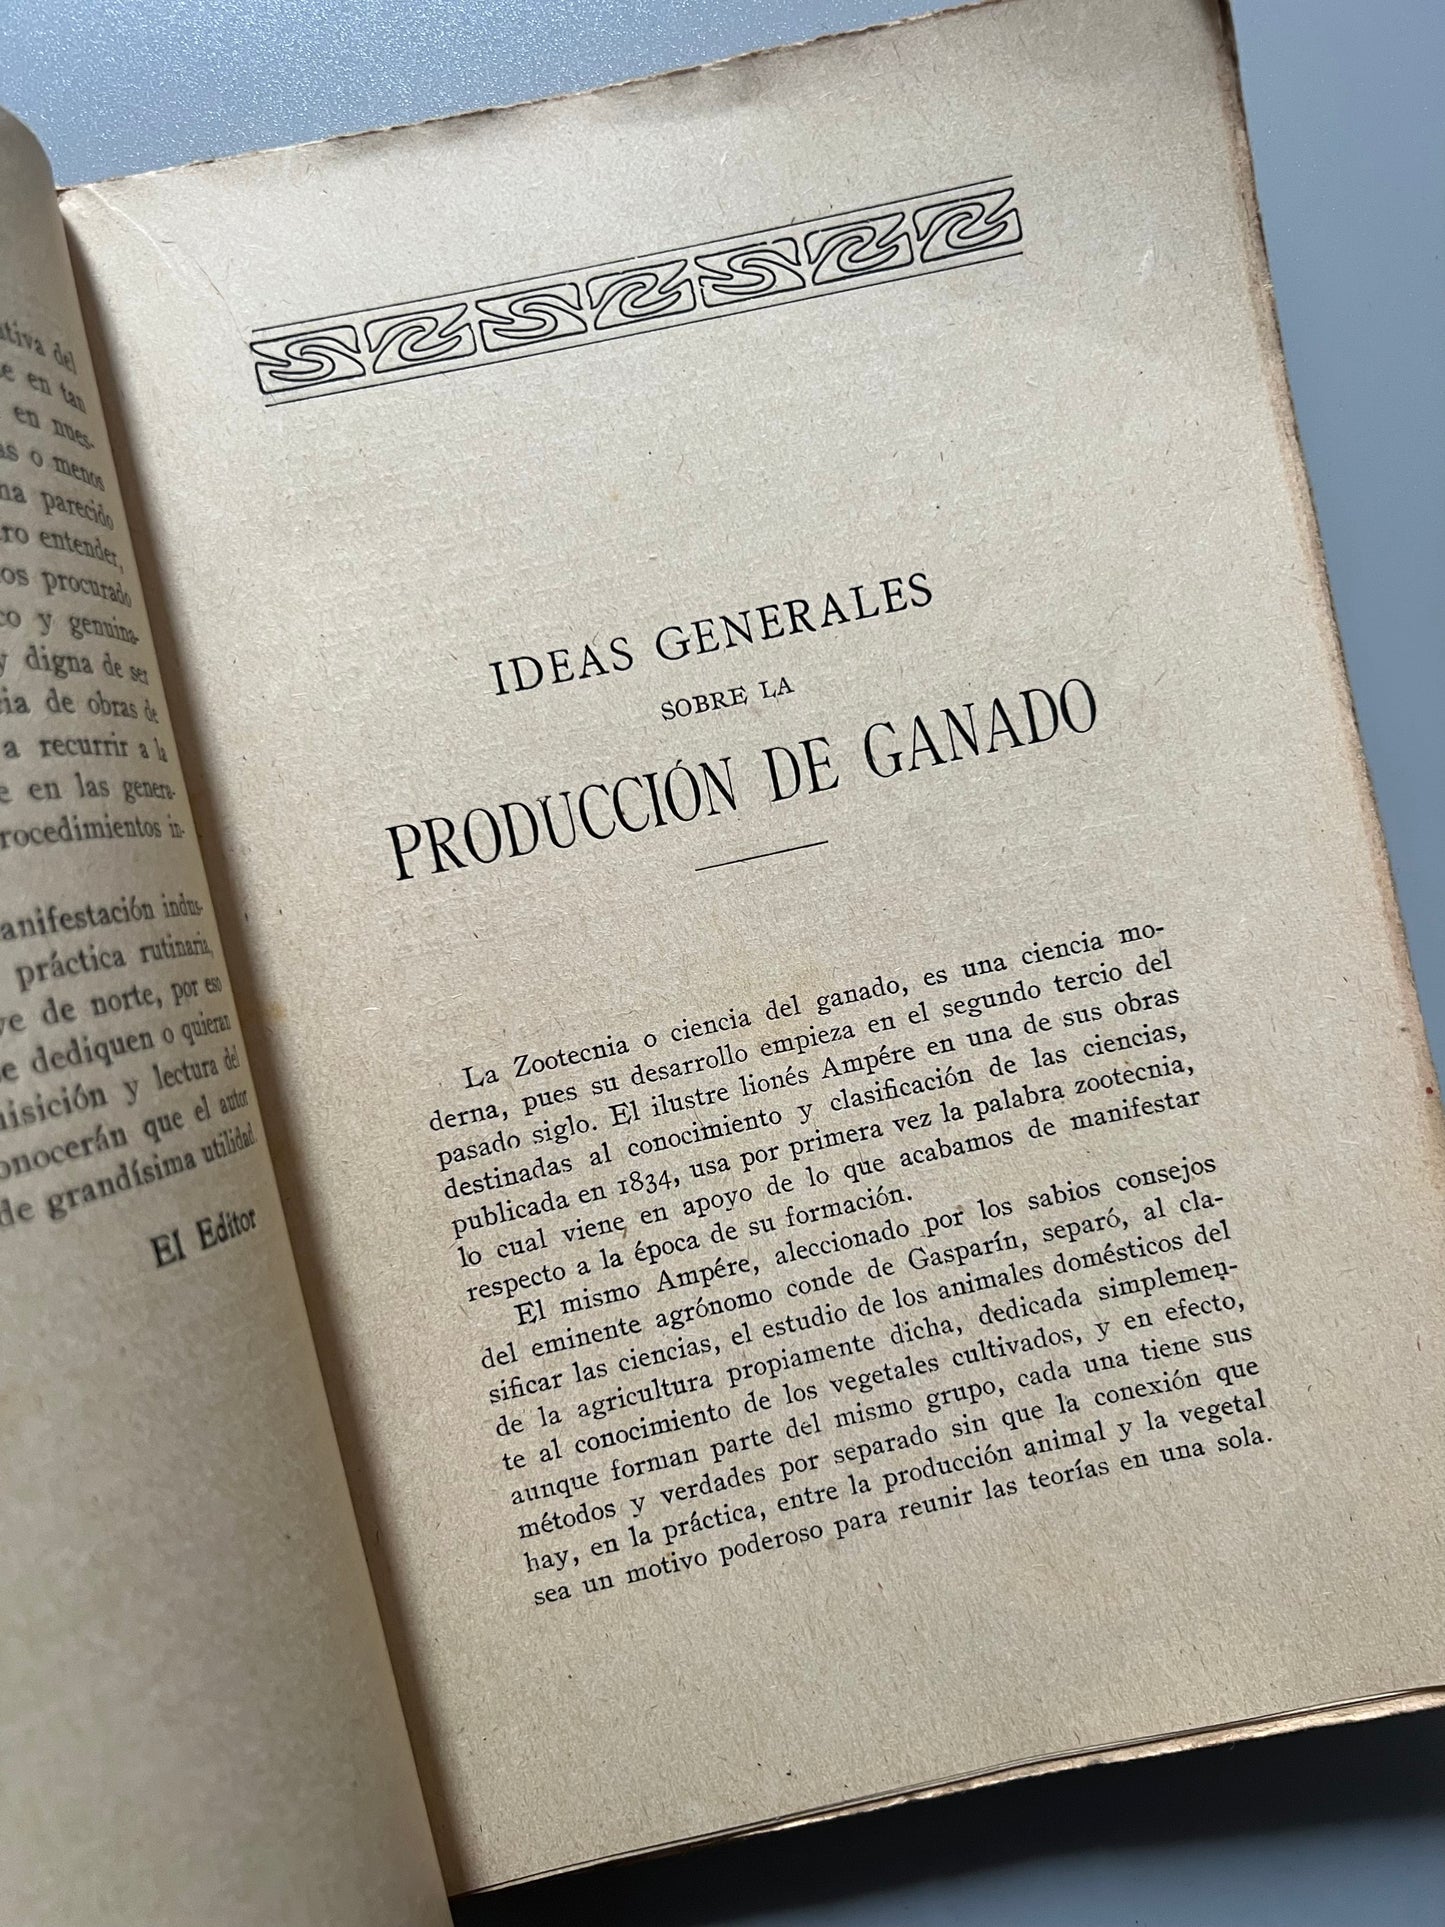 El cerdo, tratado completo de salchichería, Rafael Salavera y Trías - Librería de Francisco Puig, 1924